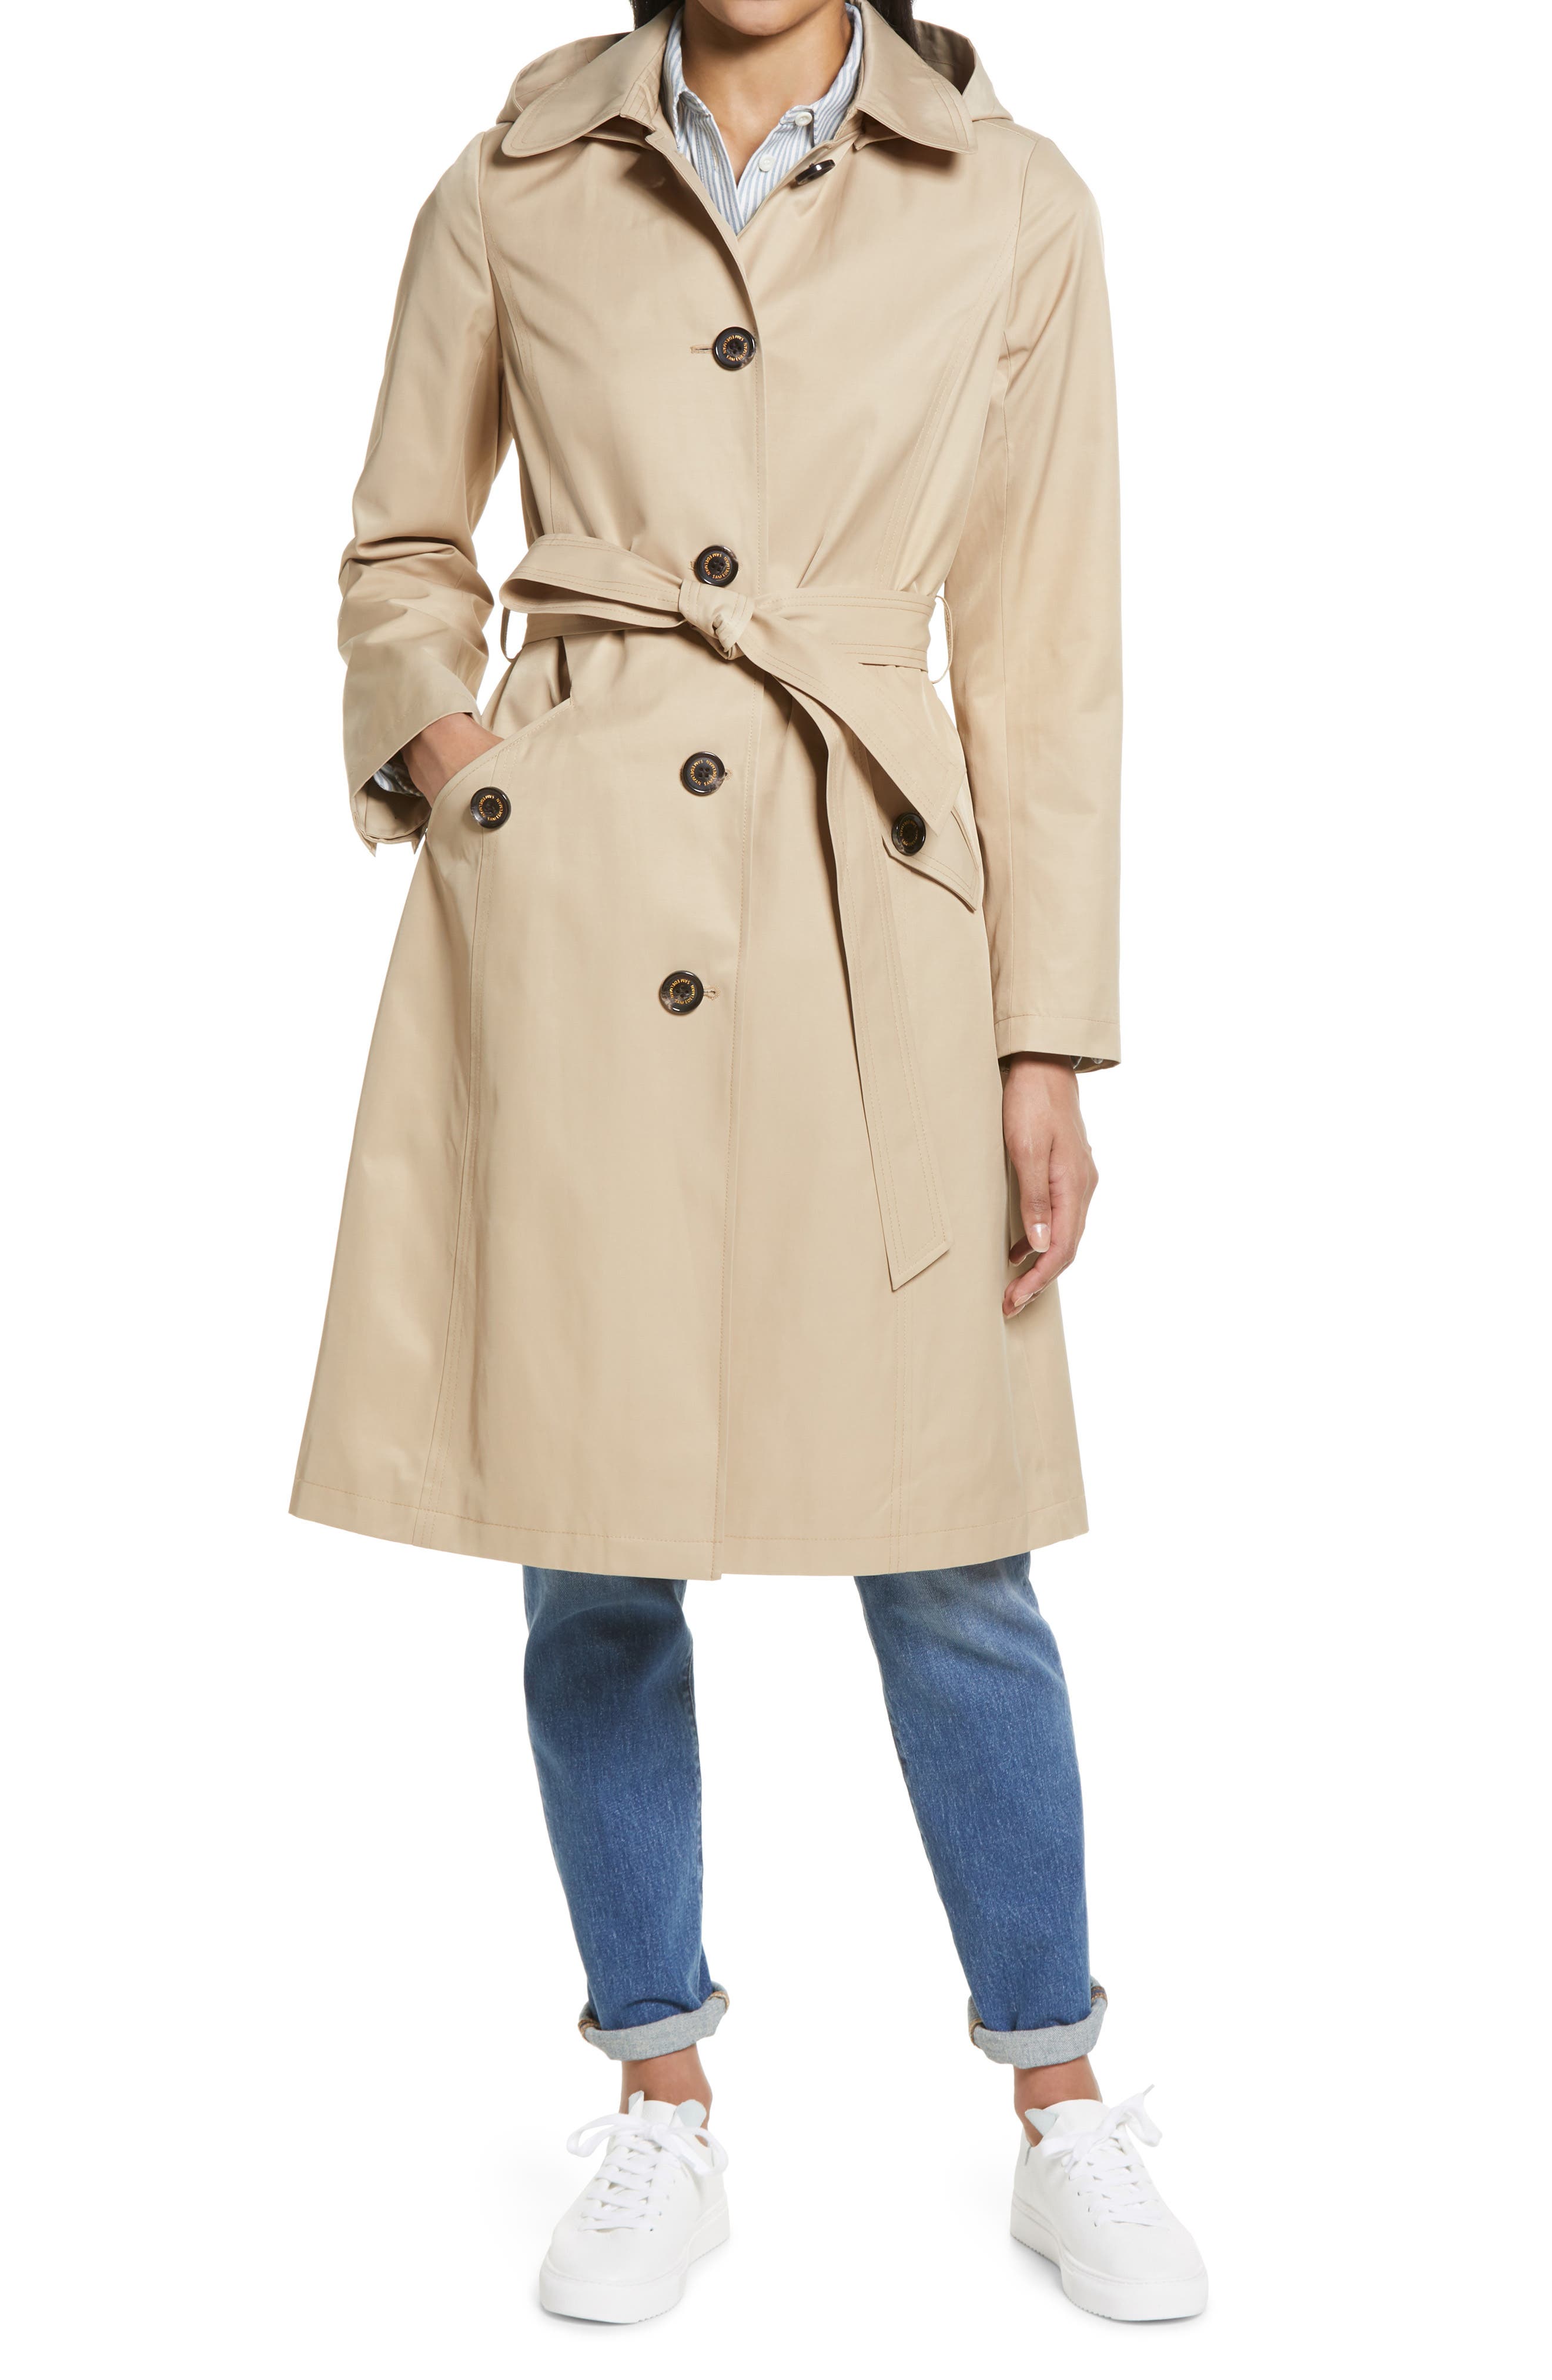 French style clothing Coat Ivory Cream Woman jacket Fur coat Spring jacket coat Kimono coat Overcoat New style coat |